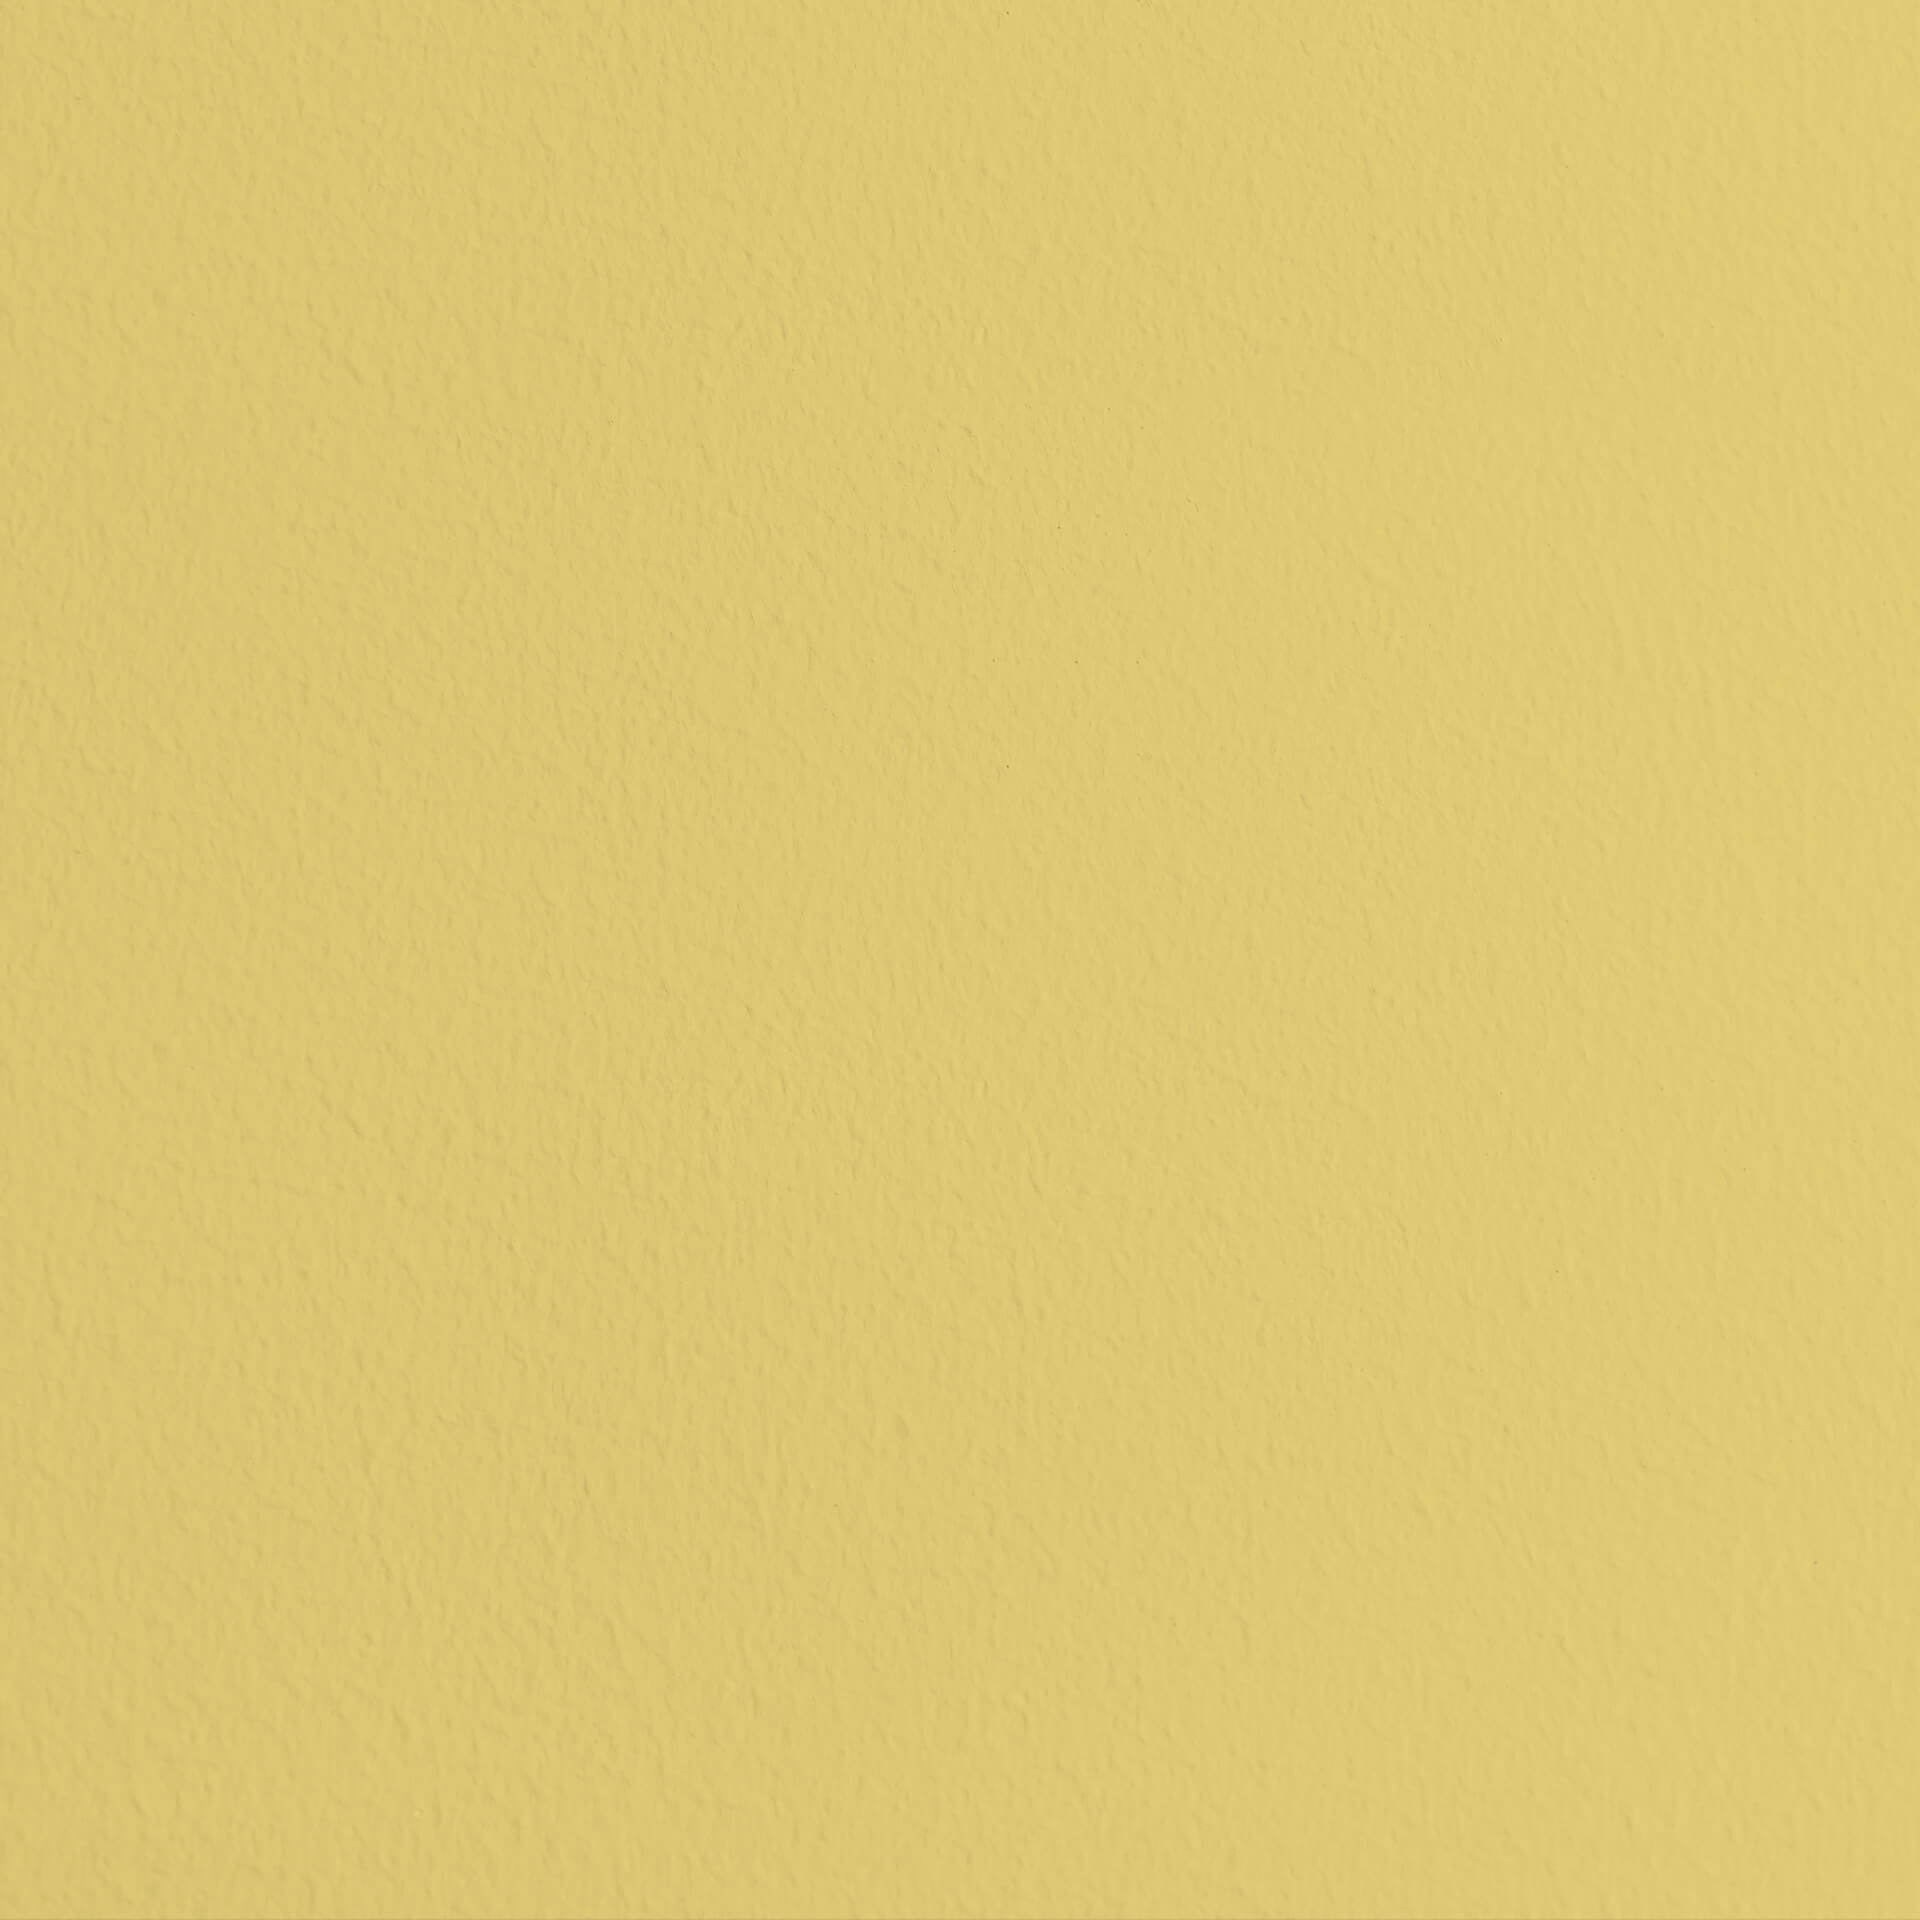 Mylands Verdure Yellow No. 148 - Marble Matt Emulsion / Wandfarbe, 2.5L